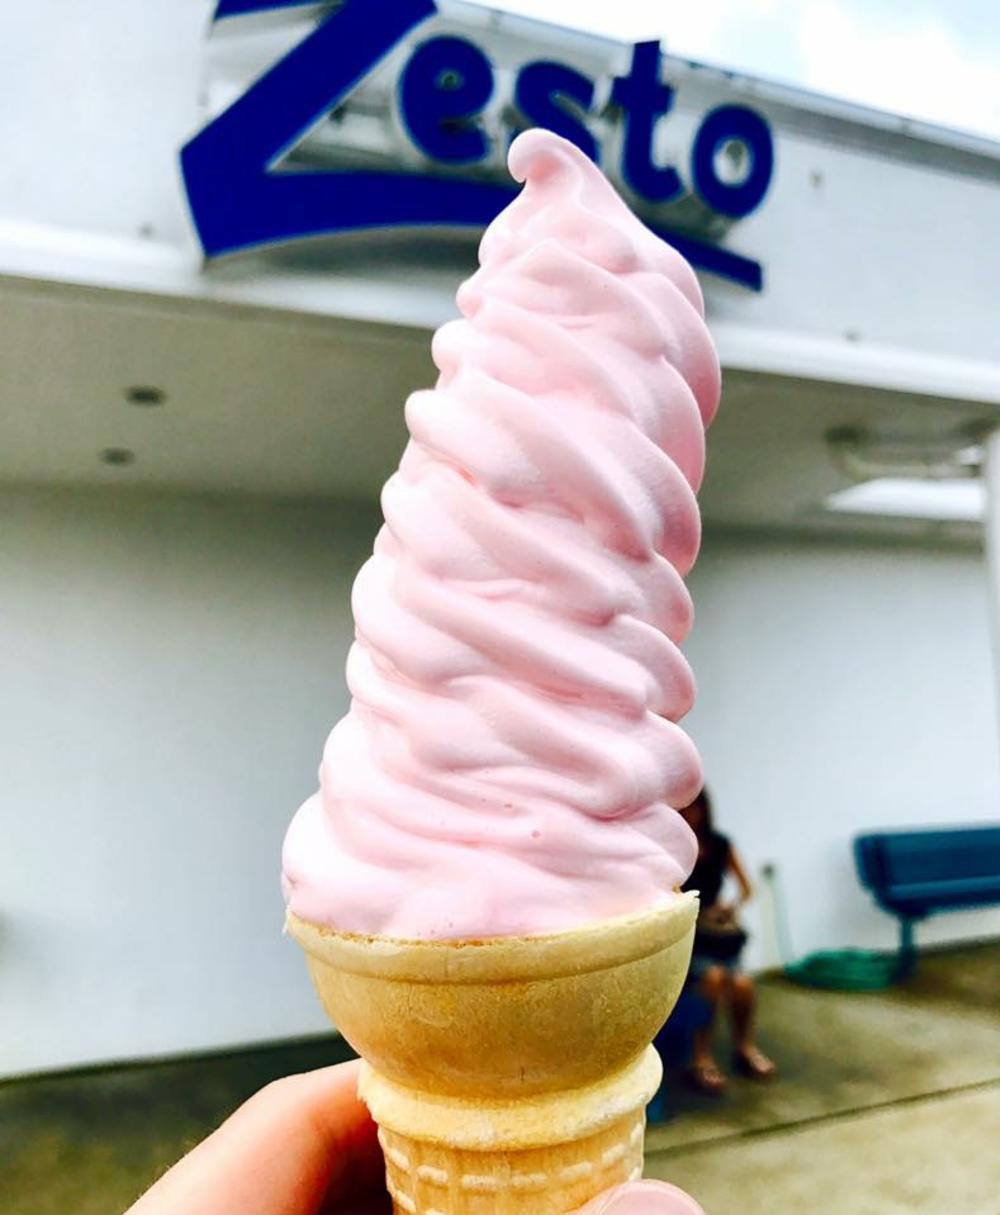 Zesto Ice Cream